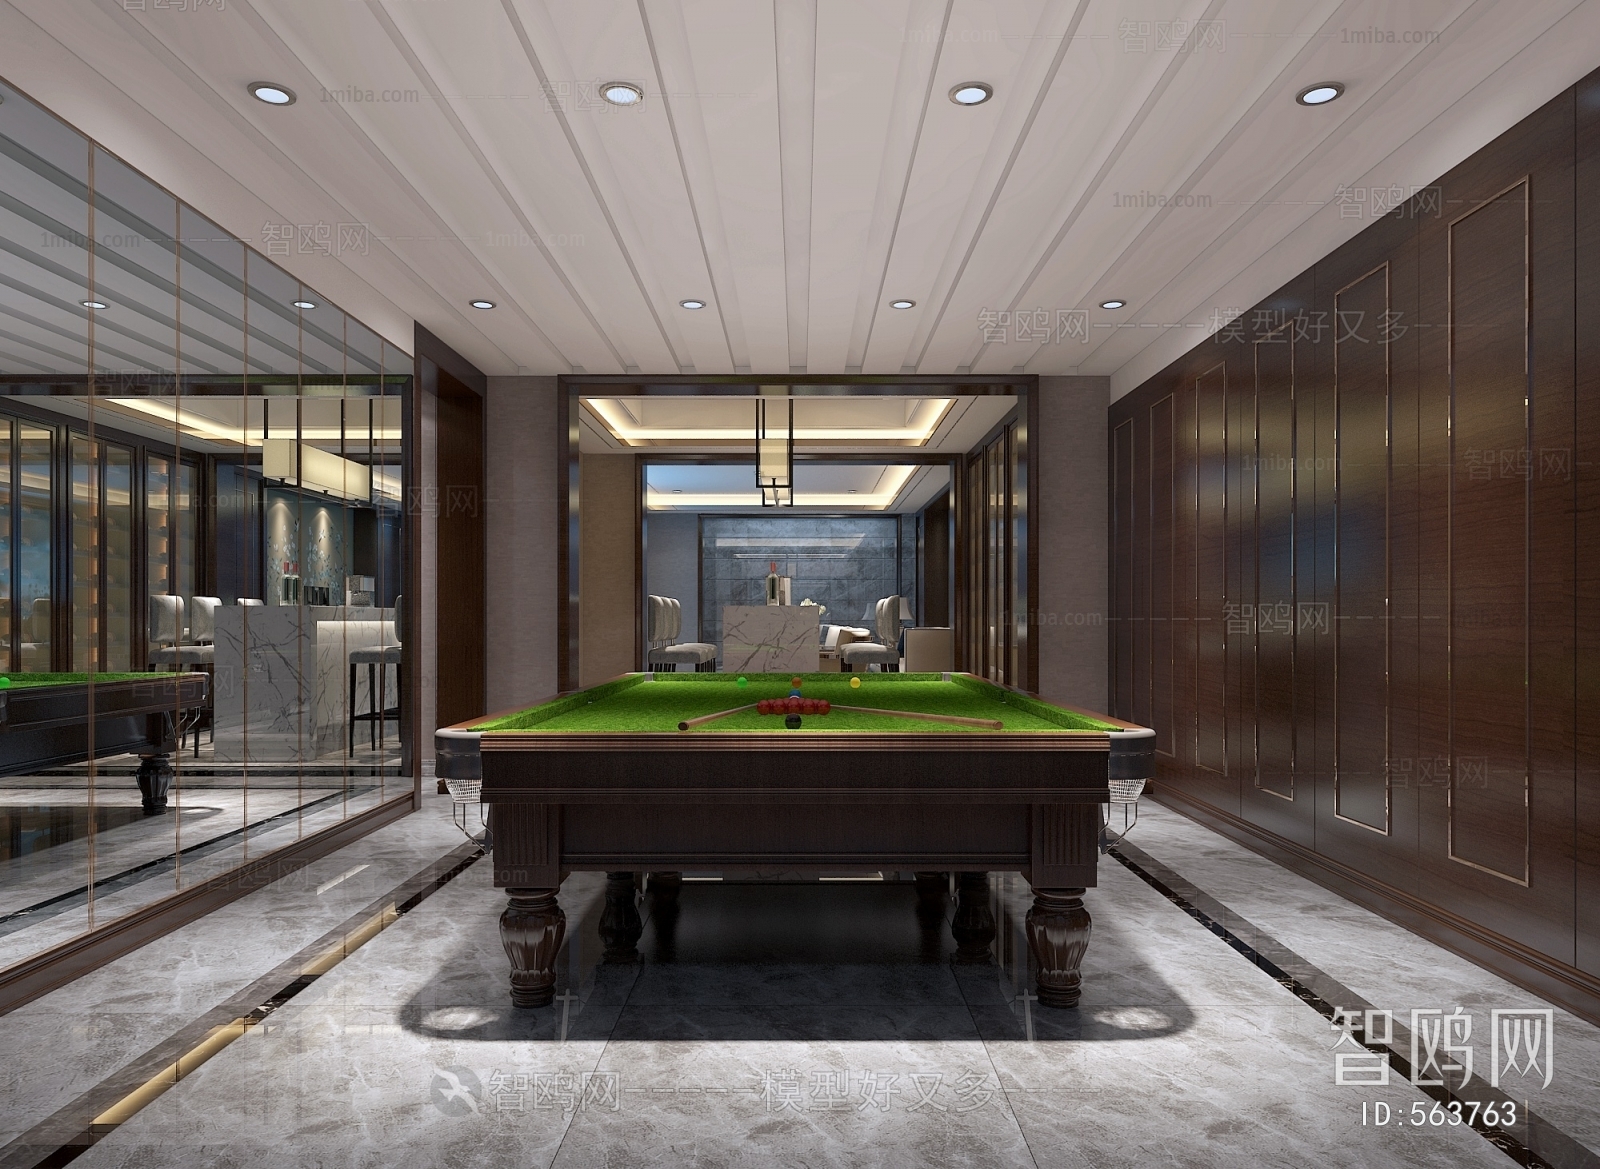 Hong Kong Style Billiards Room